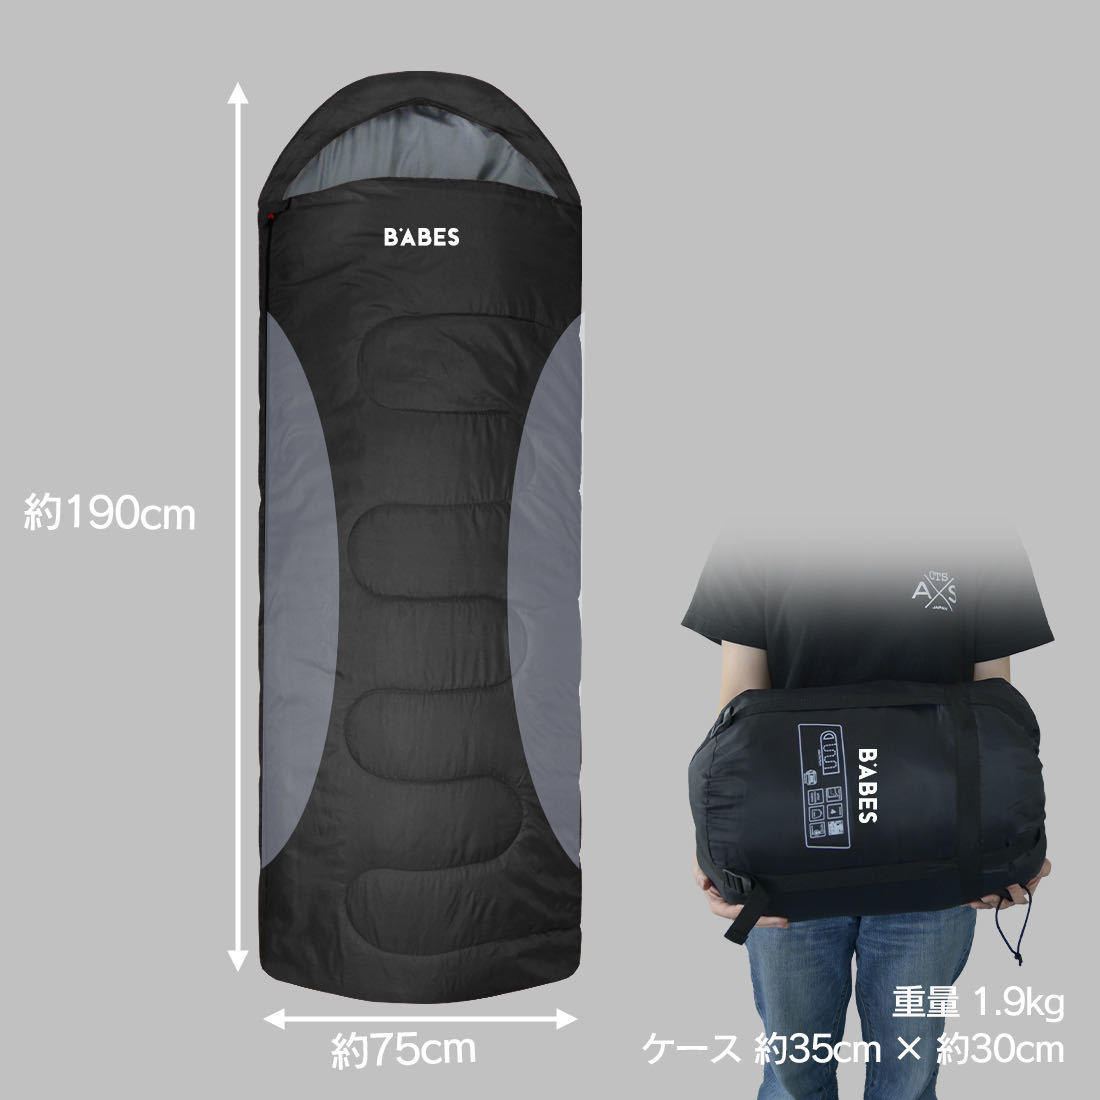 新品未使用寝袋ブラック-7℃封筒型シュラフスリーピングバッグ黒キャンプグランピング用寝具_画像2